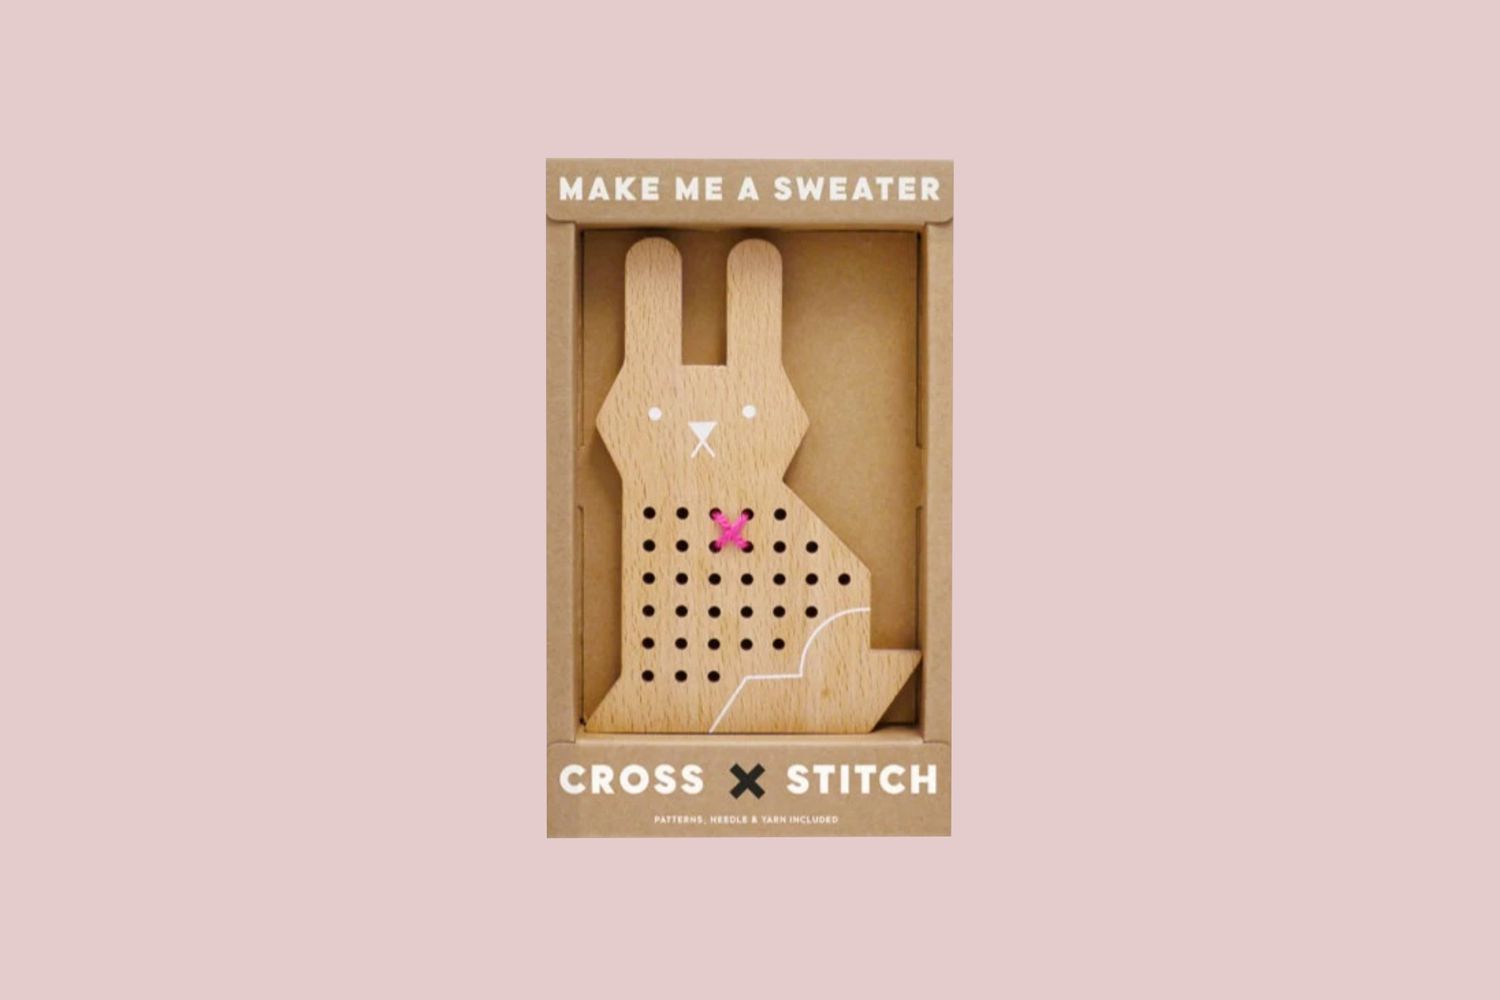 Cross Stitch Rabbit